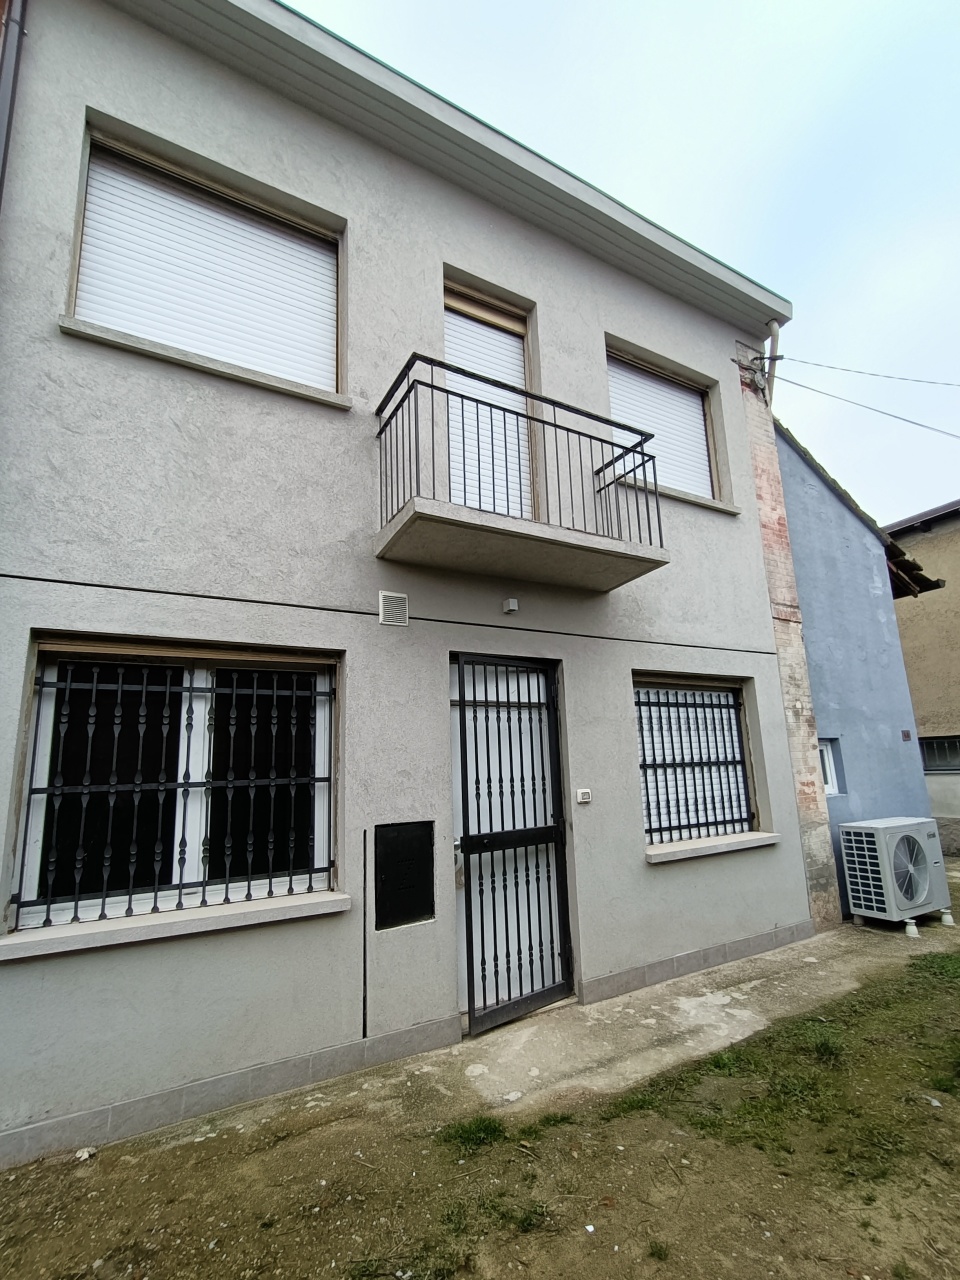 Soluzione Semindipendente in affitto a Pieve Porto Morone, 4 locali, prezzo € 500 | PortaleAgenzieImmobiliari.it